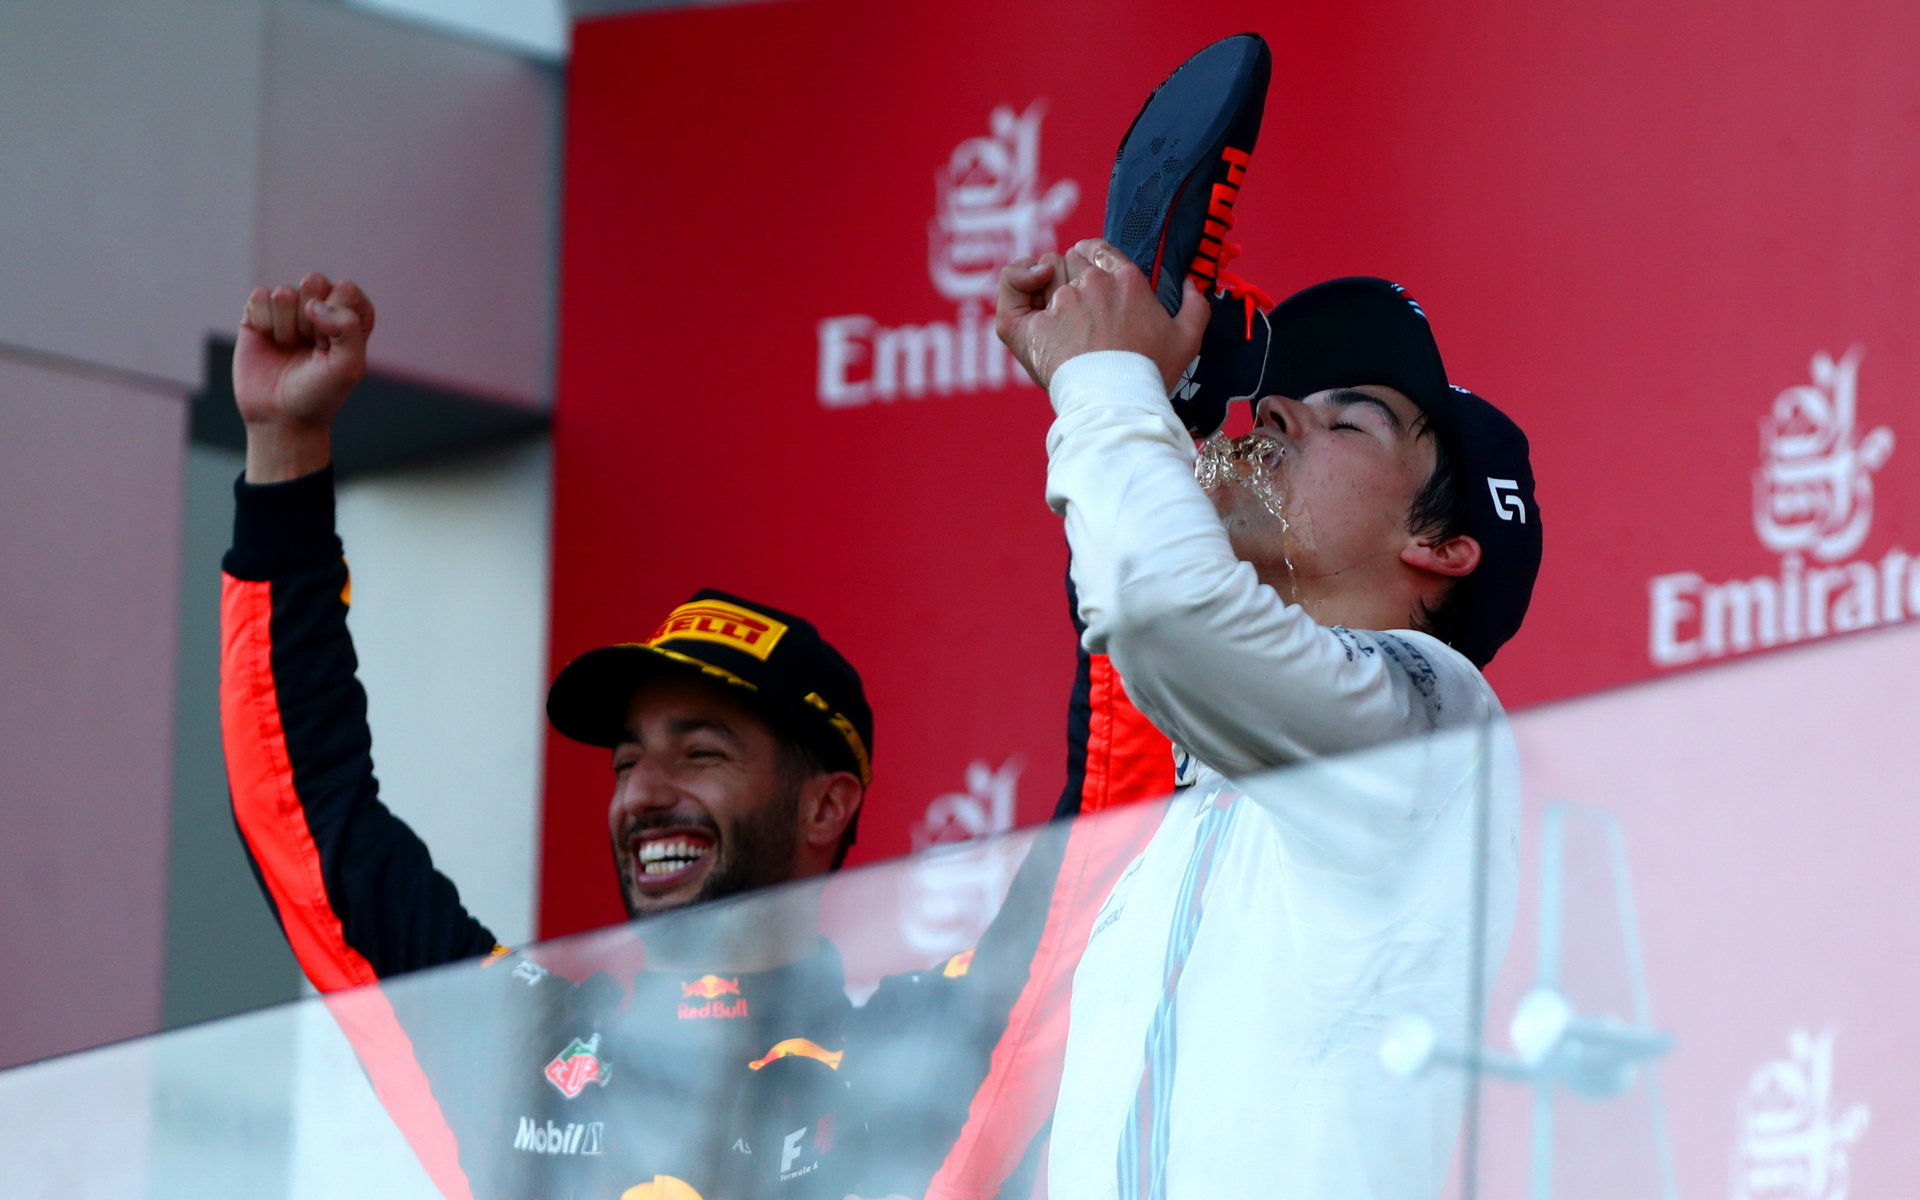 Daniel Ricciardo a jeho "shoey" si vyzkoušel Lance Stroll na pódiu po závodě v Baku